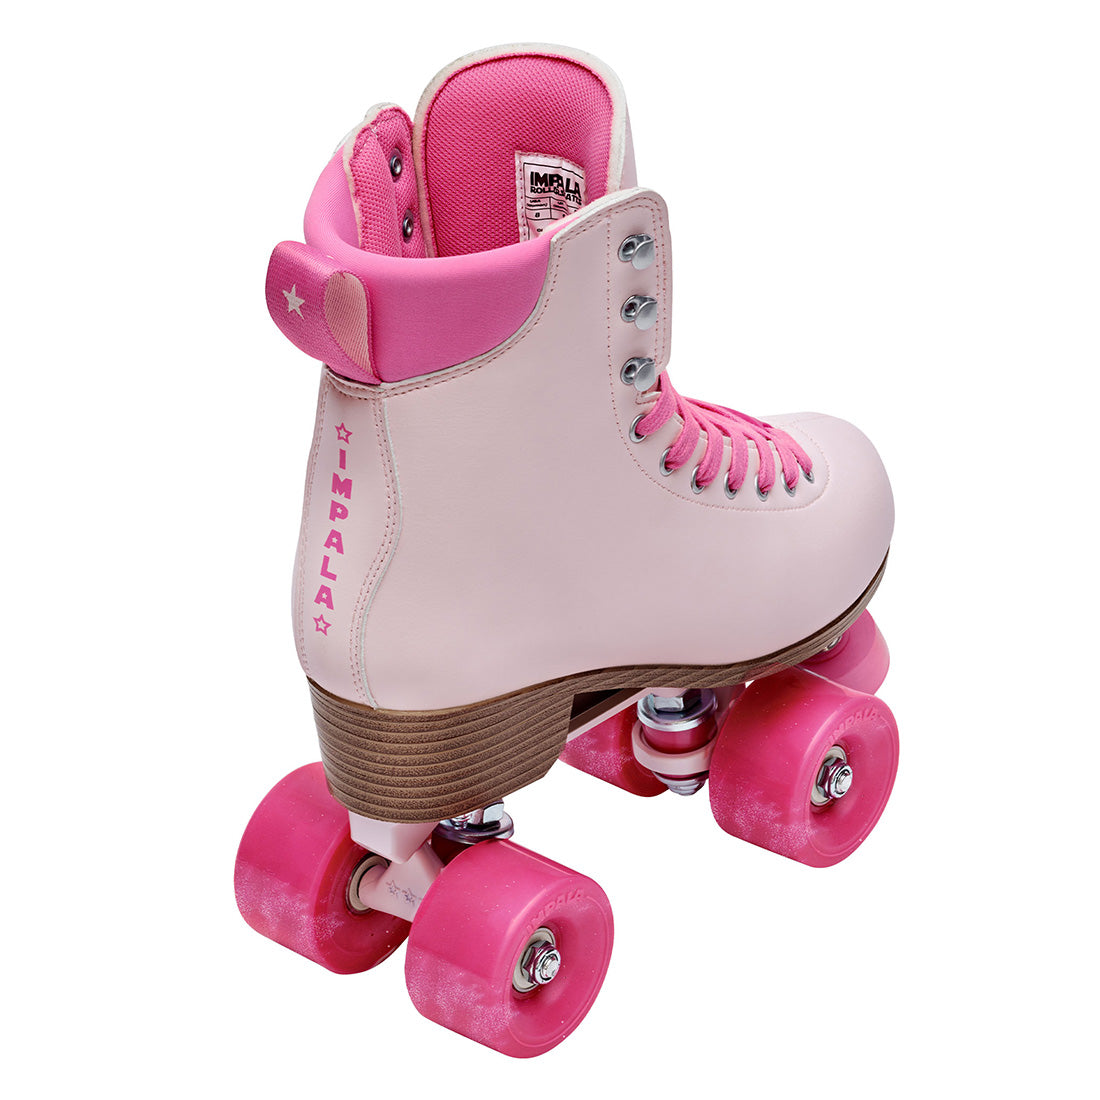 Impala Samira Vegan - Wild Pink Roller Skates